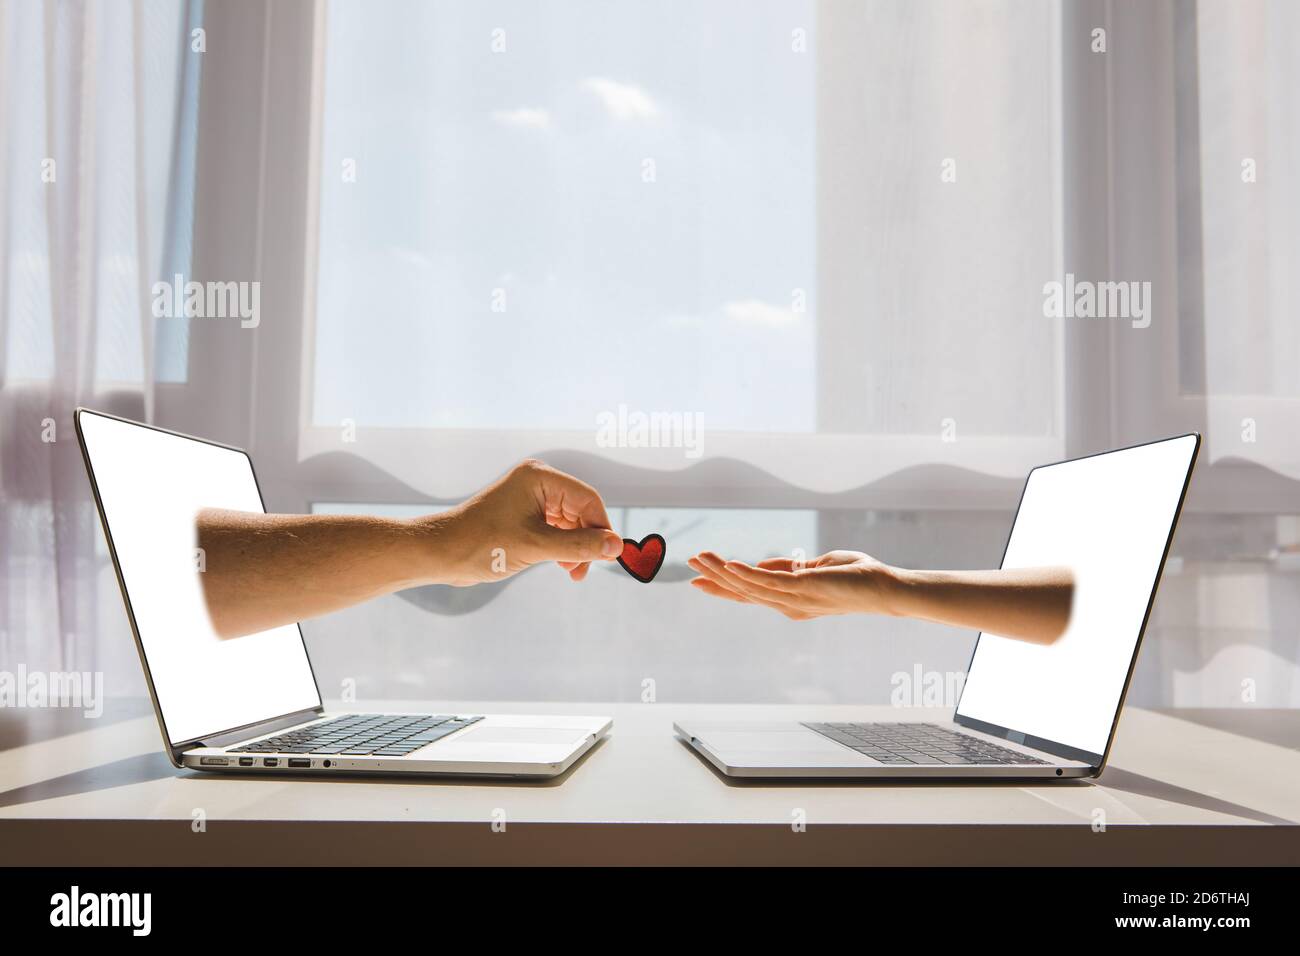 concept de datation en ligne deux mains stick hors de l'écran d'ordinateur portable Banque D'Images